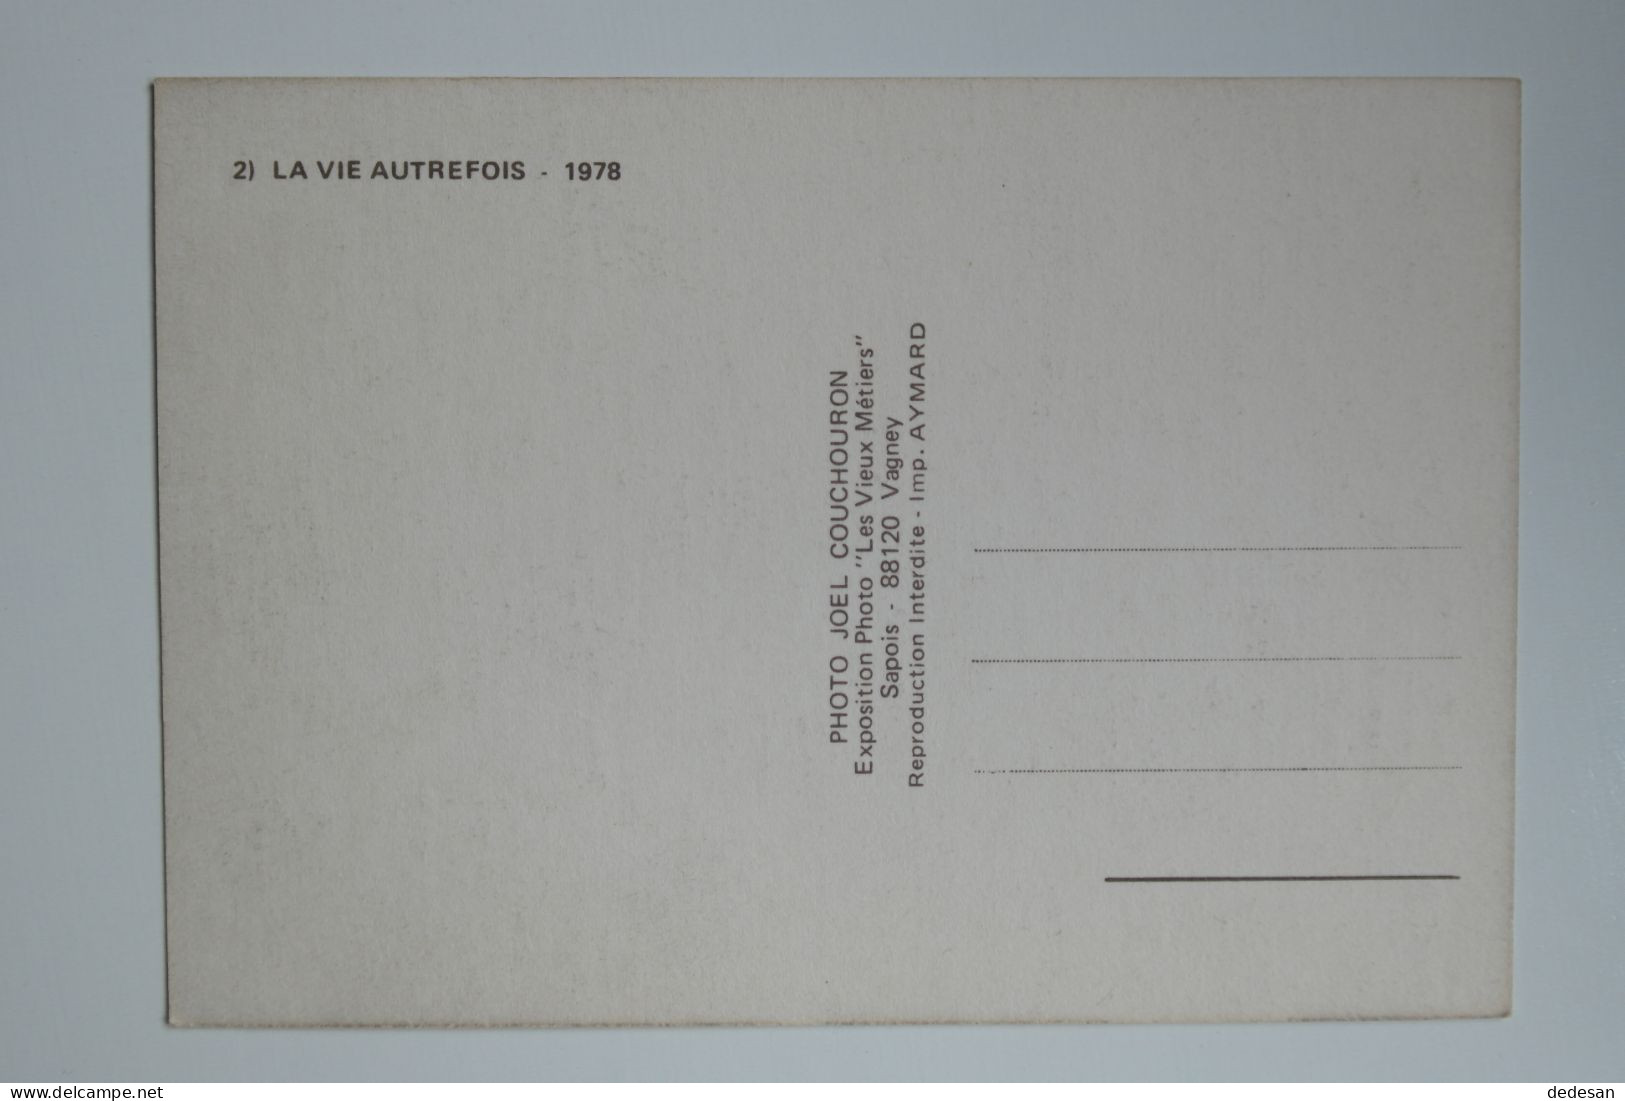 CPSM Grand Format 148x102 2) La Vie Autrefois 1978 Editions Les Vieux Métiers - CHA03 - Paesani